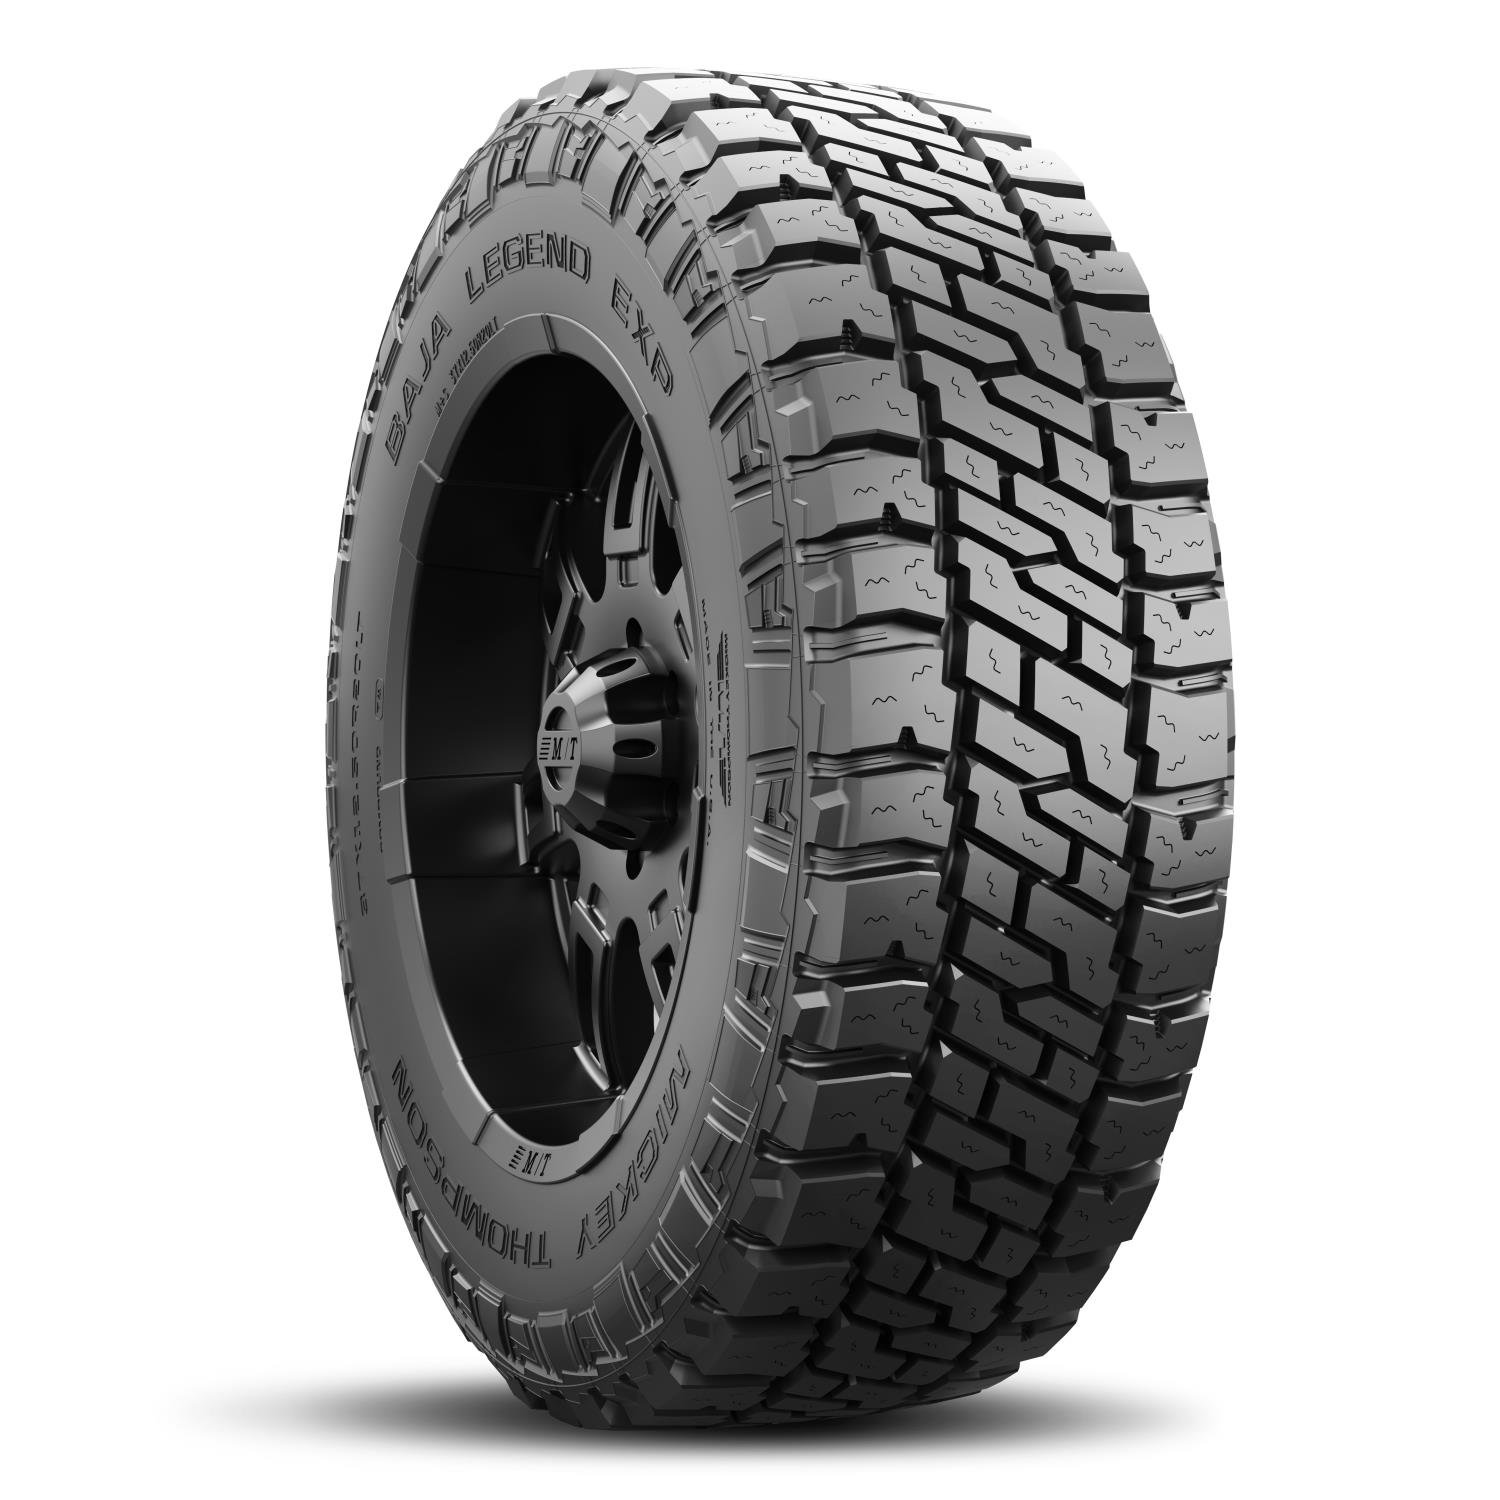 Baja Legend EXP Tire 35X12.50R20LT